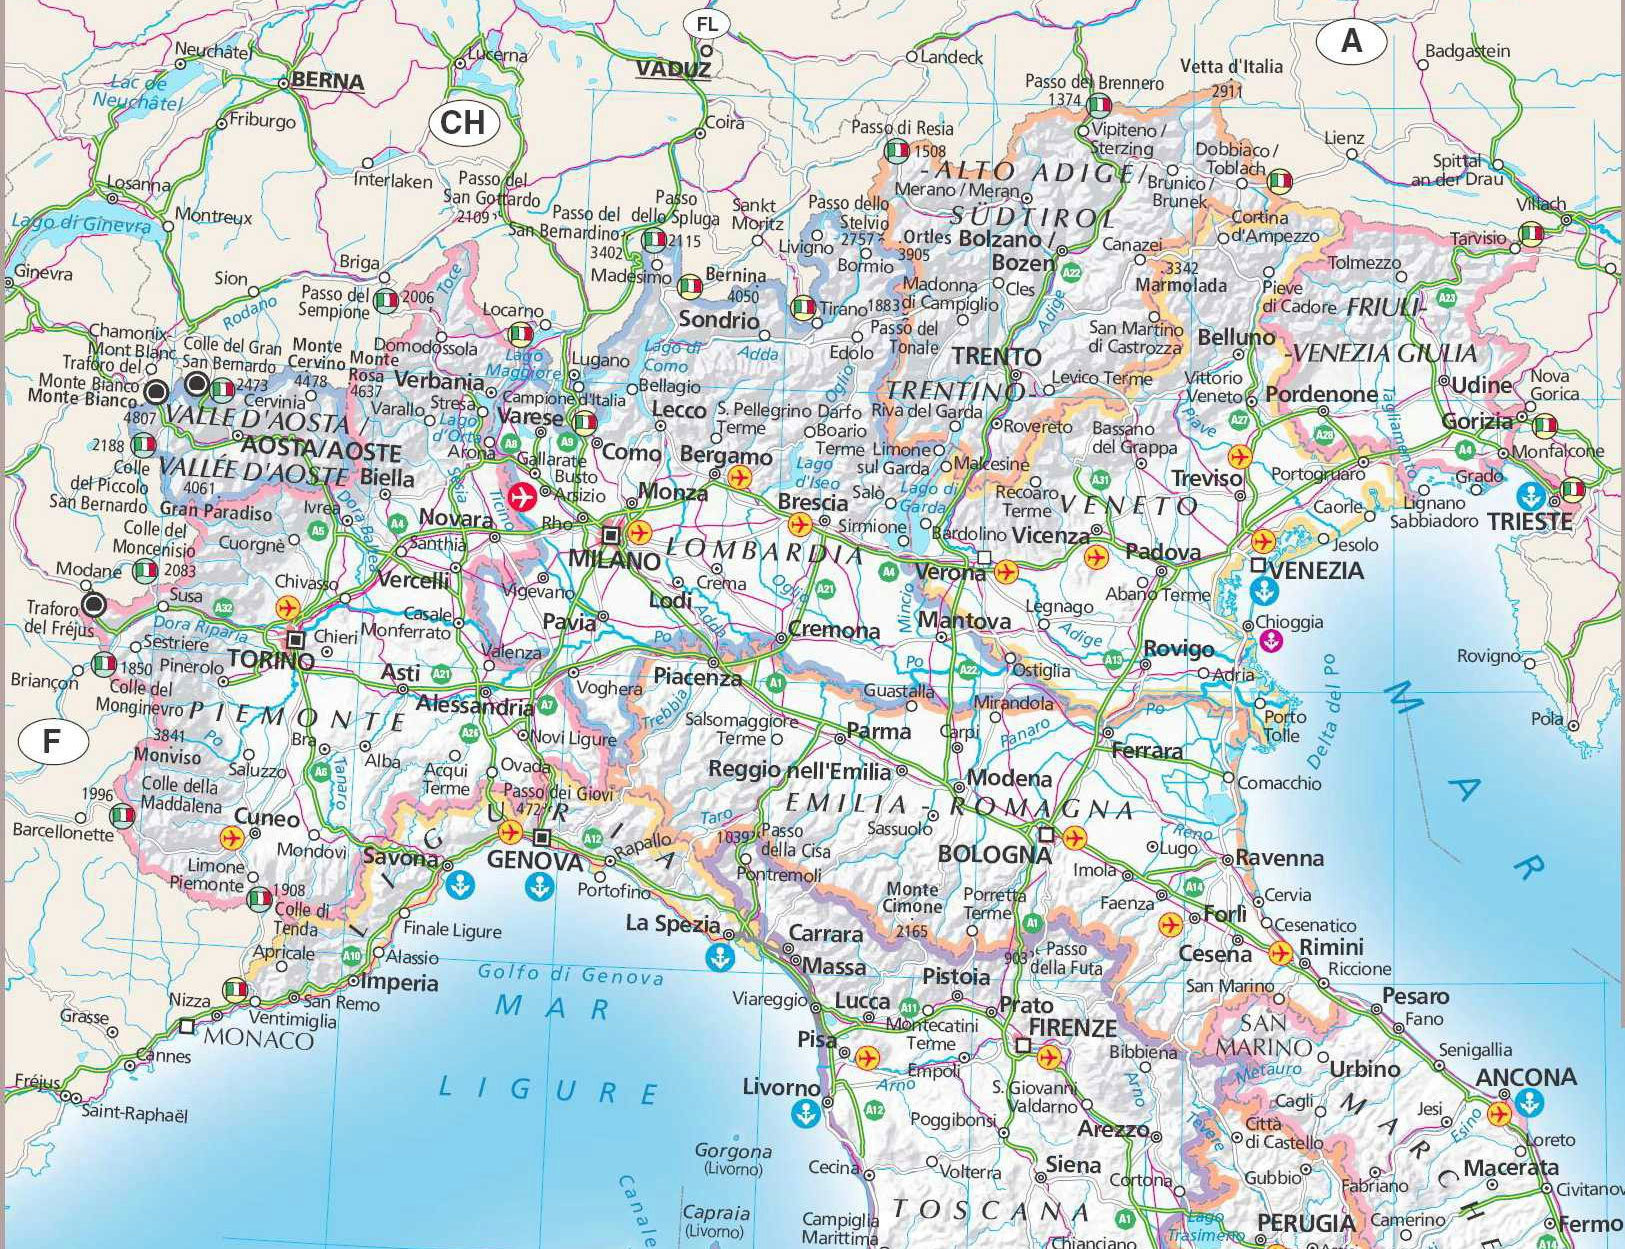 Карта франции италии с городами на русском